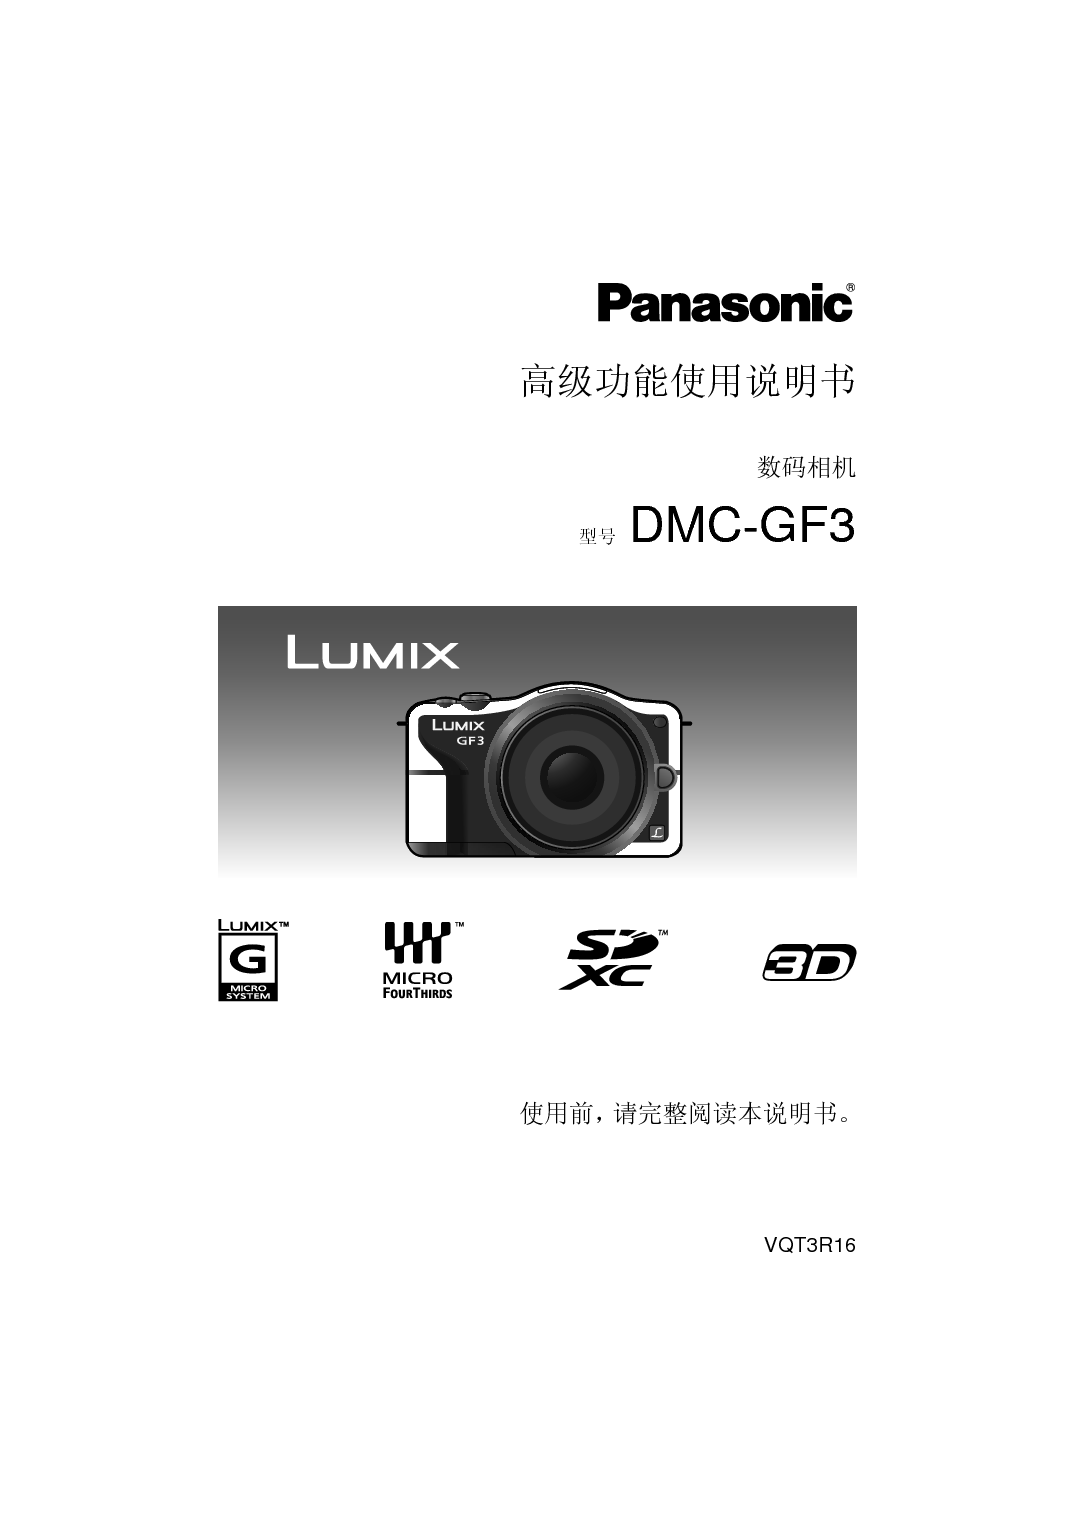 松下 Panasonic DMC-GF3GK 高级说明书 封面